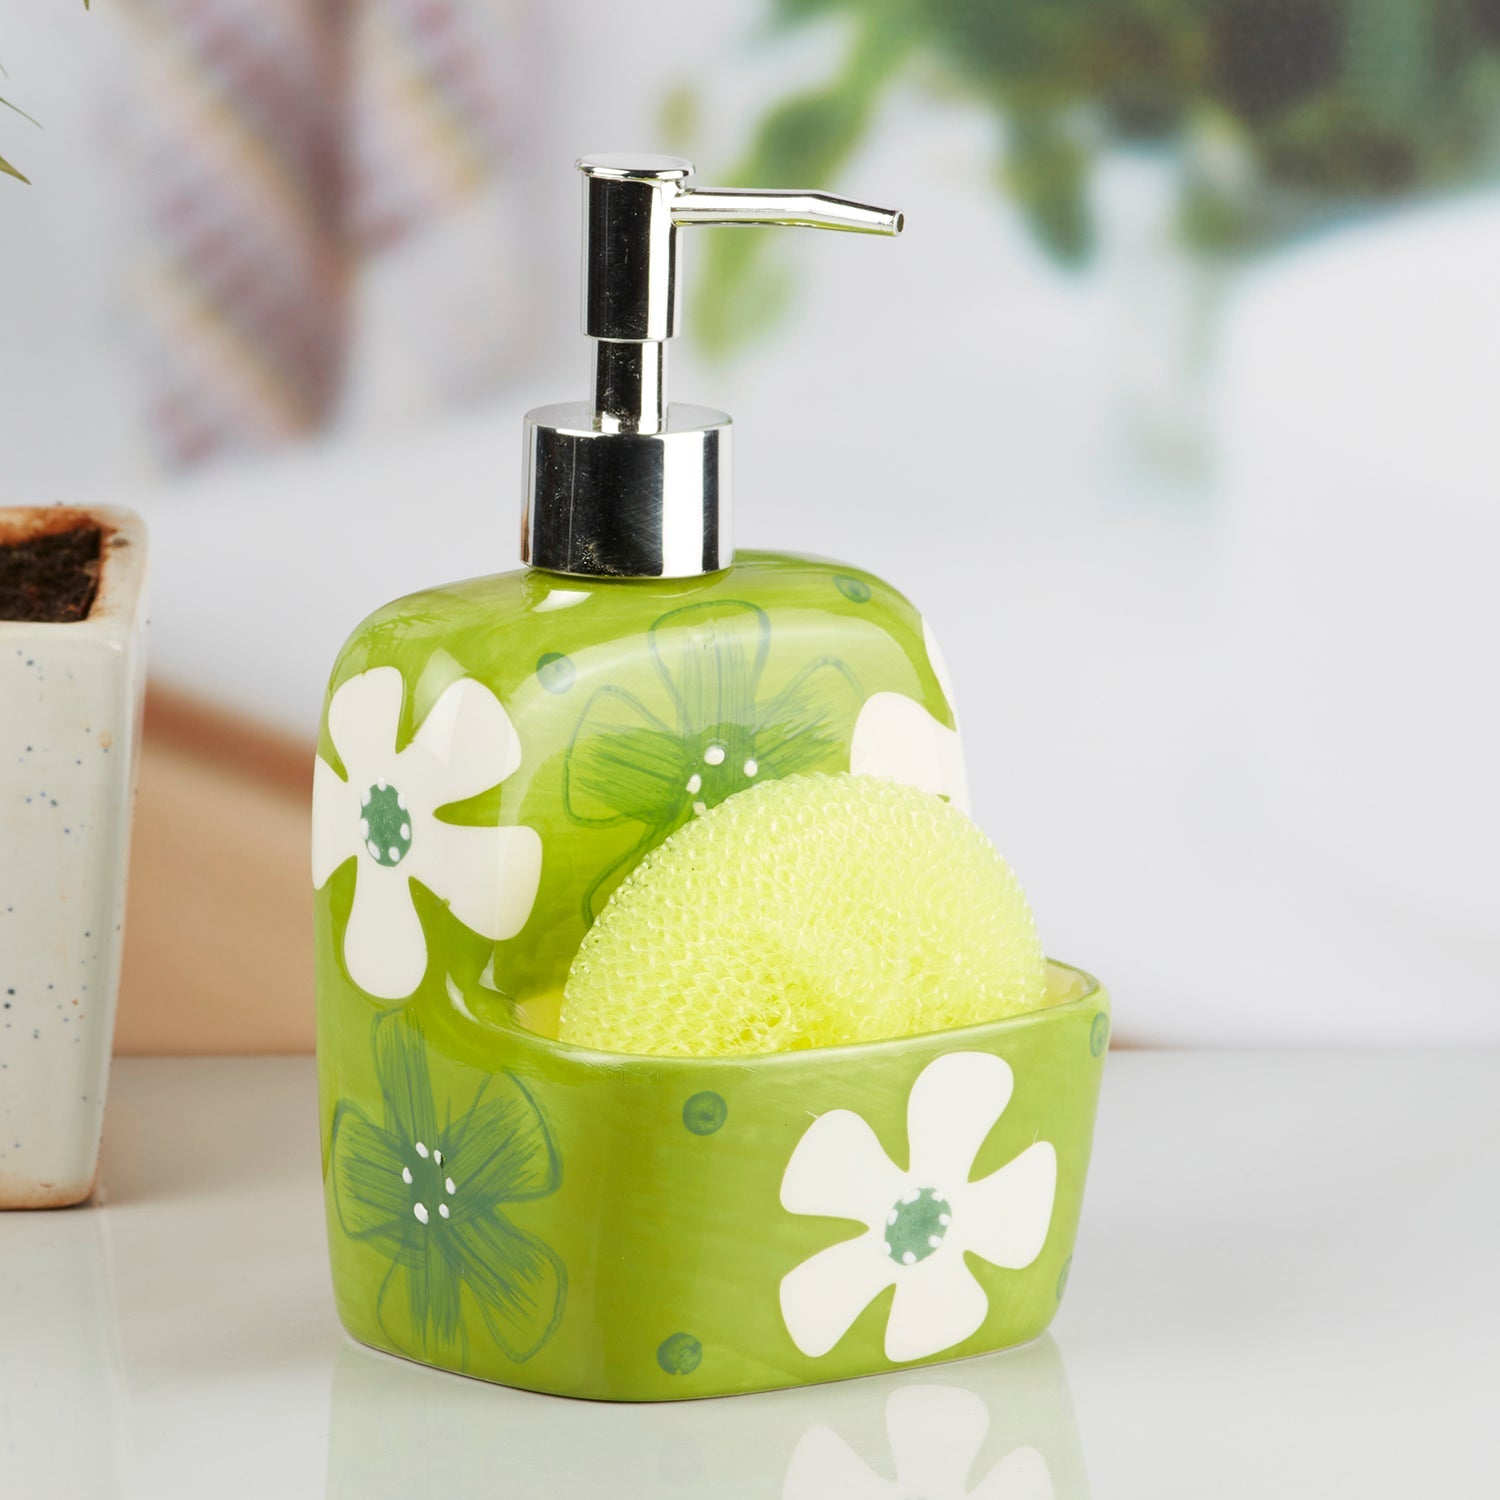 Kookee Ceramic Soap Dispenser for Bathroom handwash, refillable pump bottle for Kitchen hand wash basin, Set of 1, Green (8046)